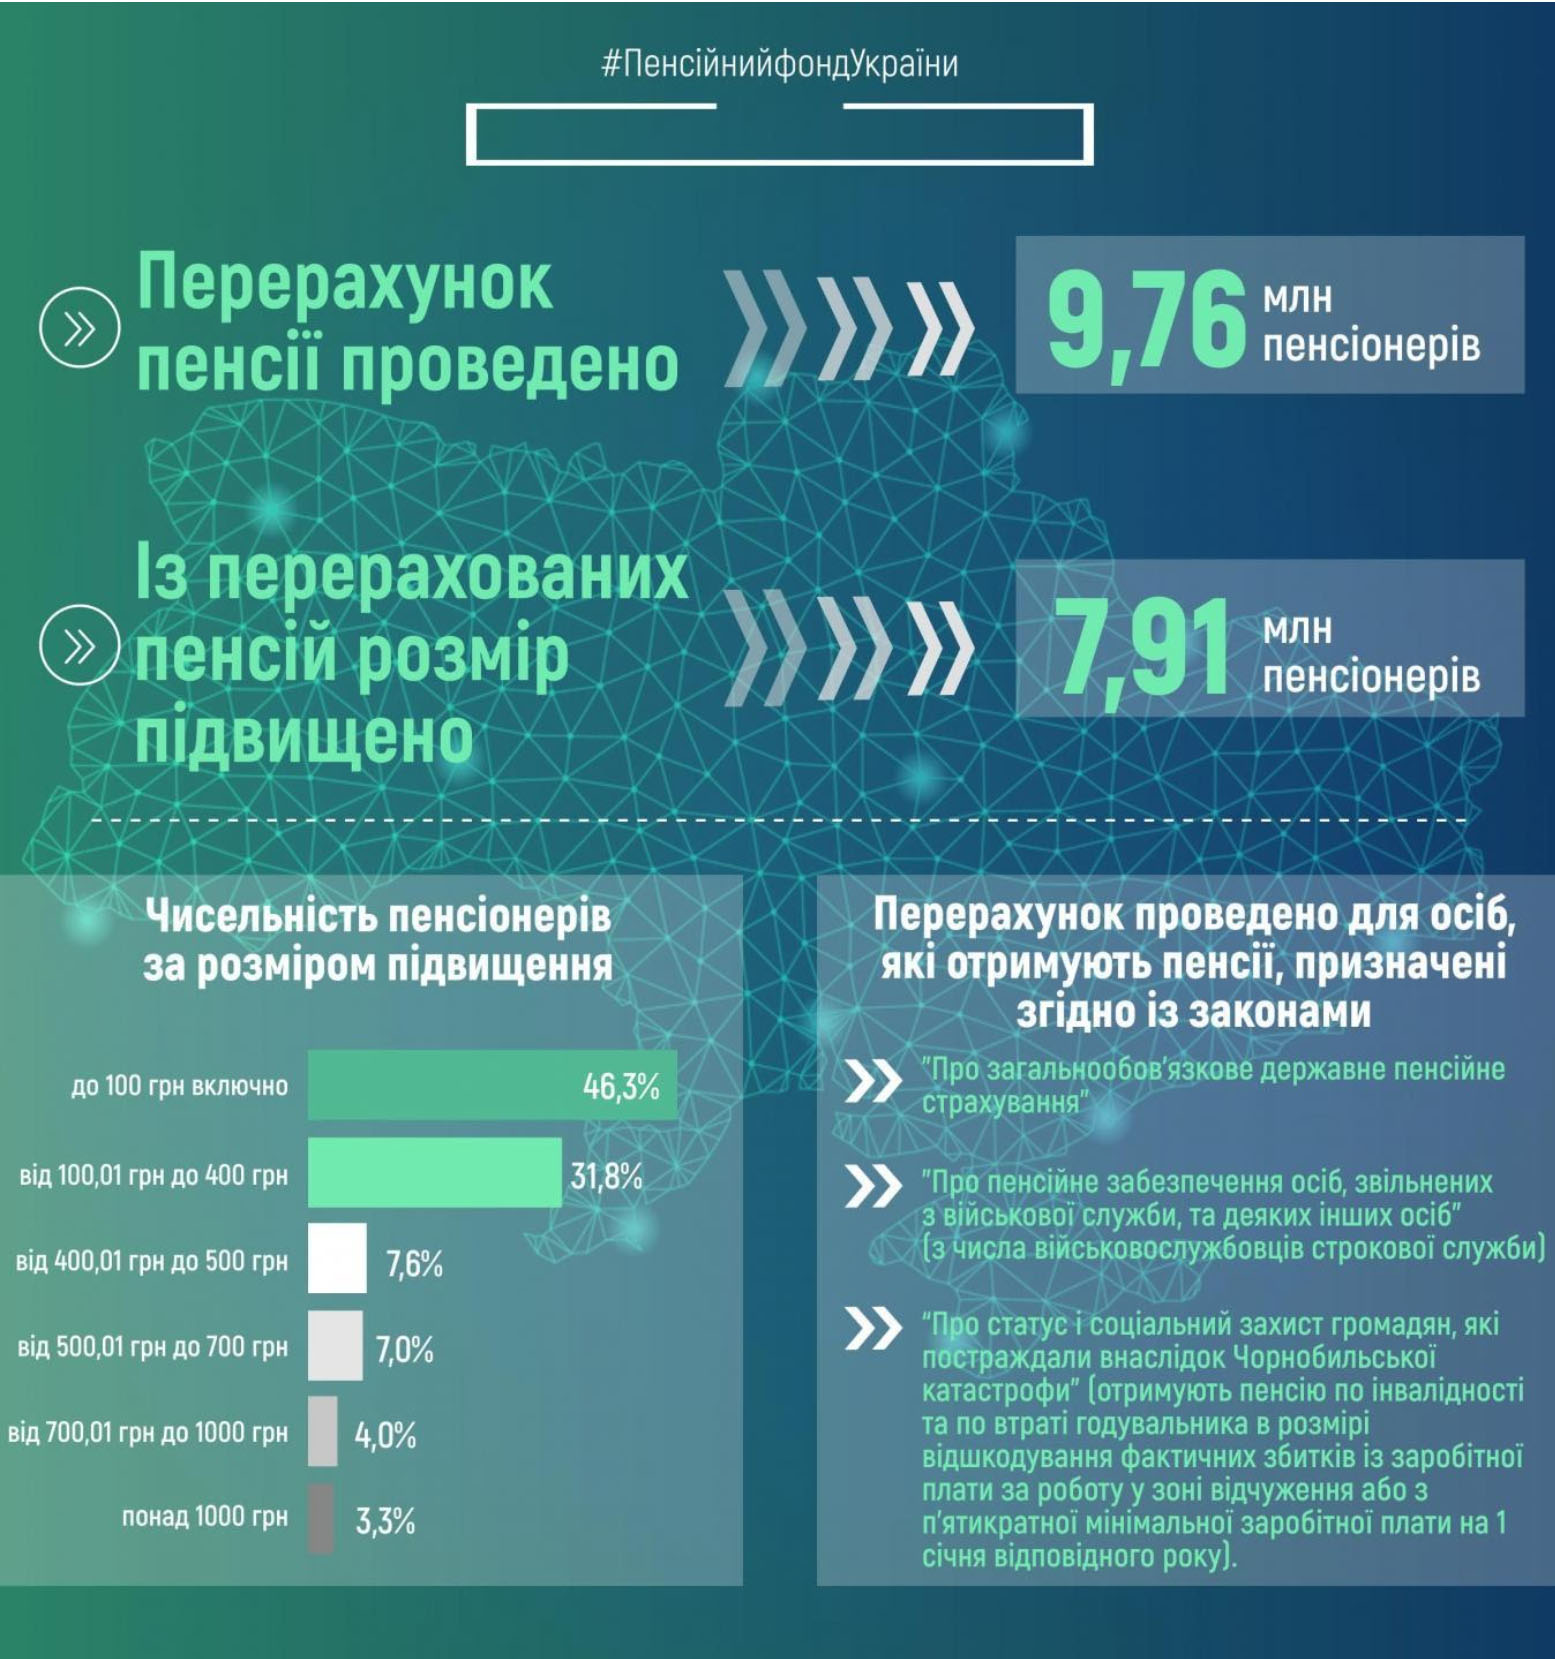 Пенсионные выплаты в Украине в 2021 году: пенсионный возраст, надбавки, льготы - 2 - изображение